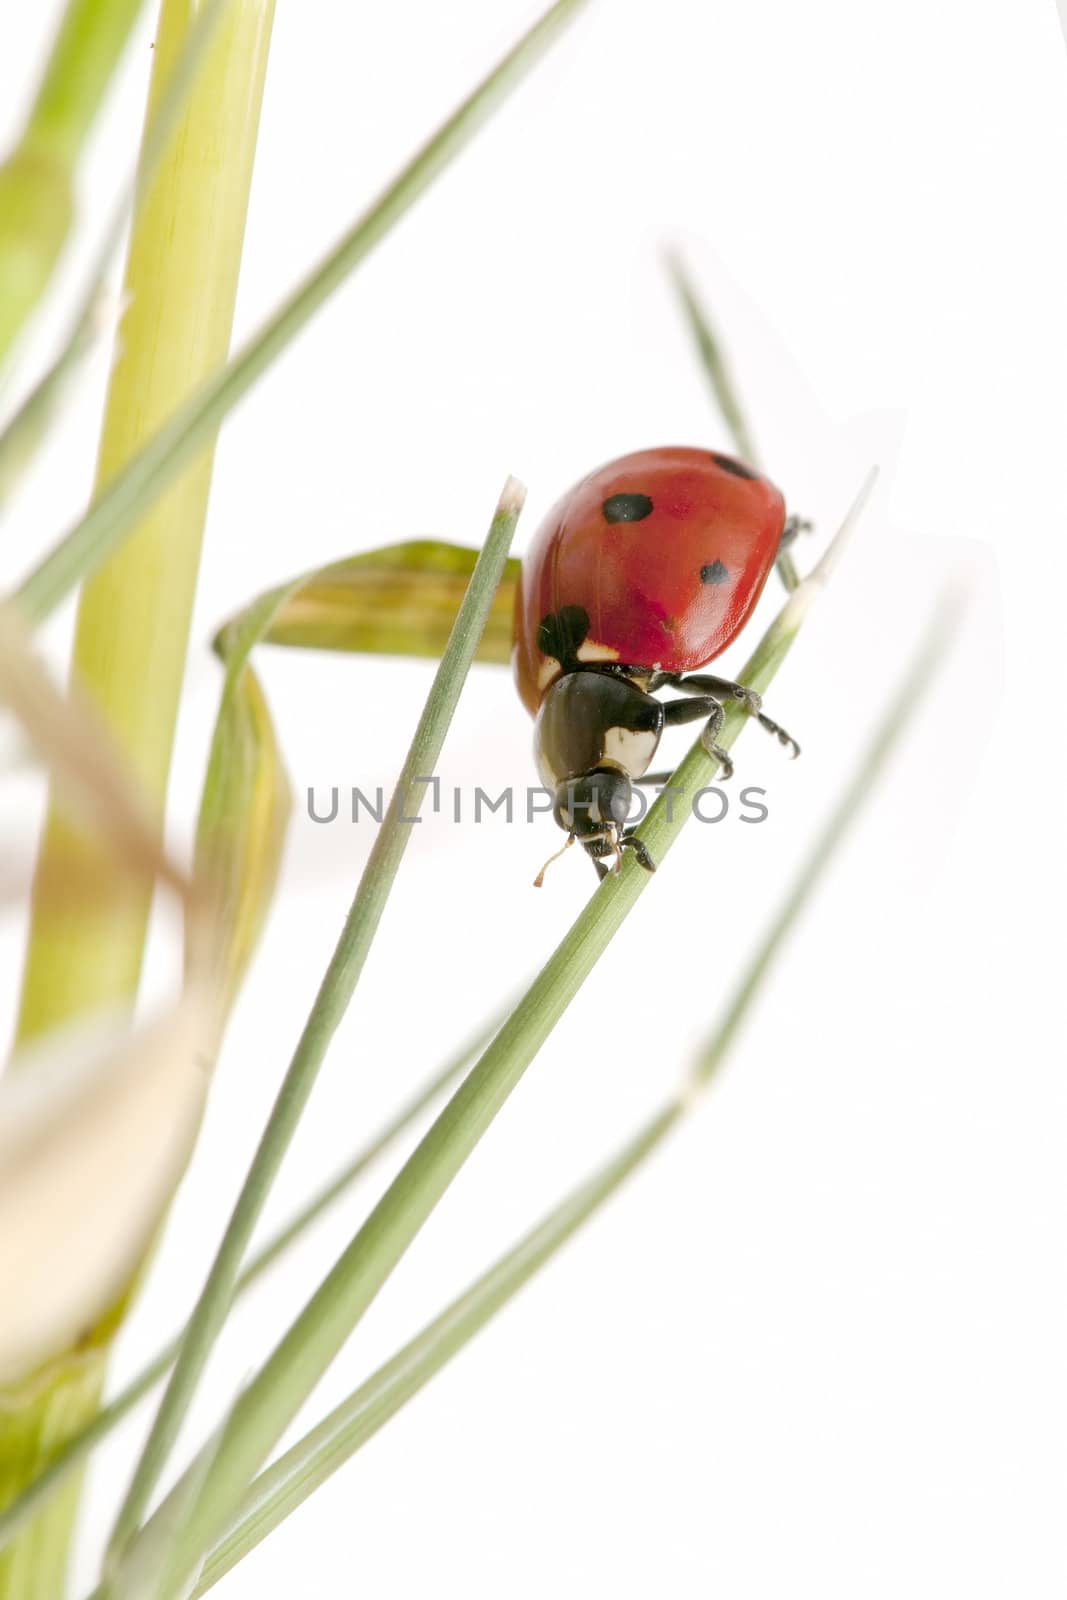 ladybug on white background